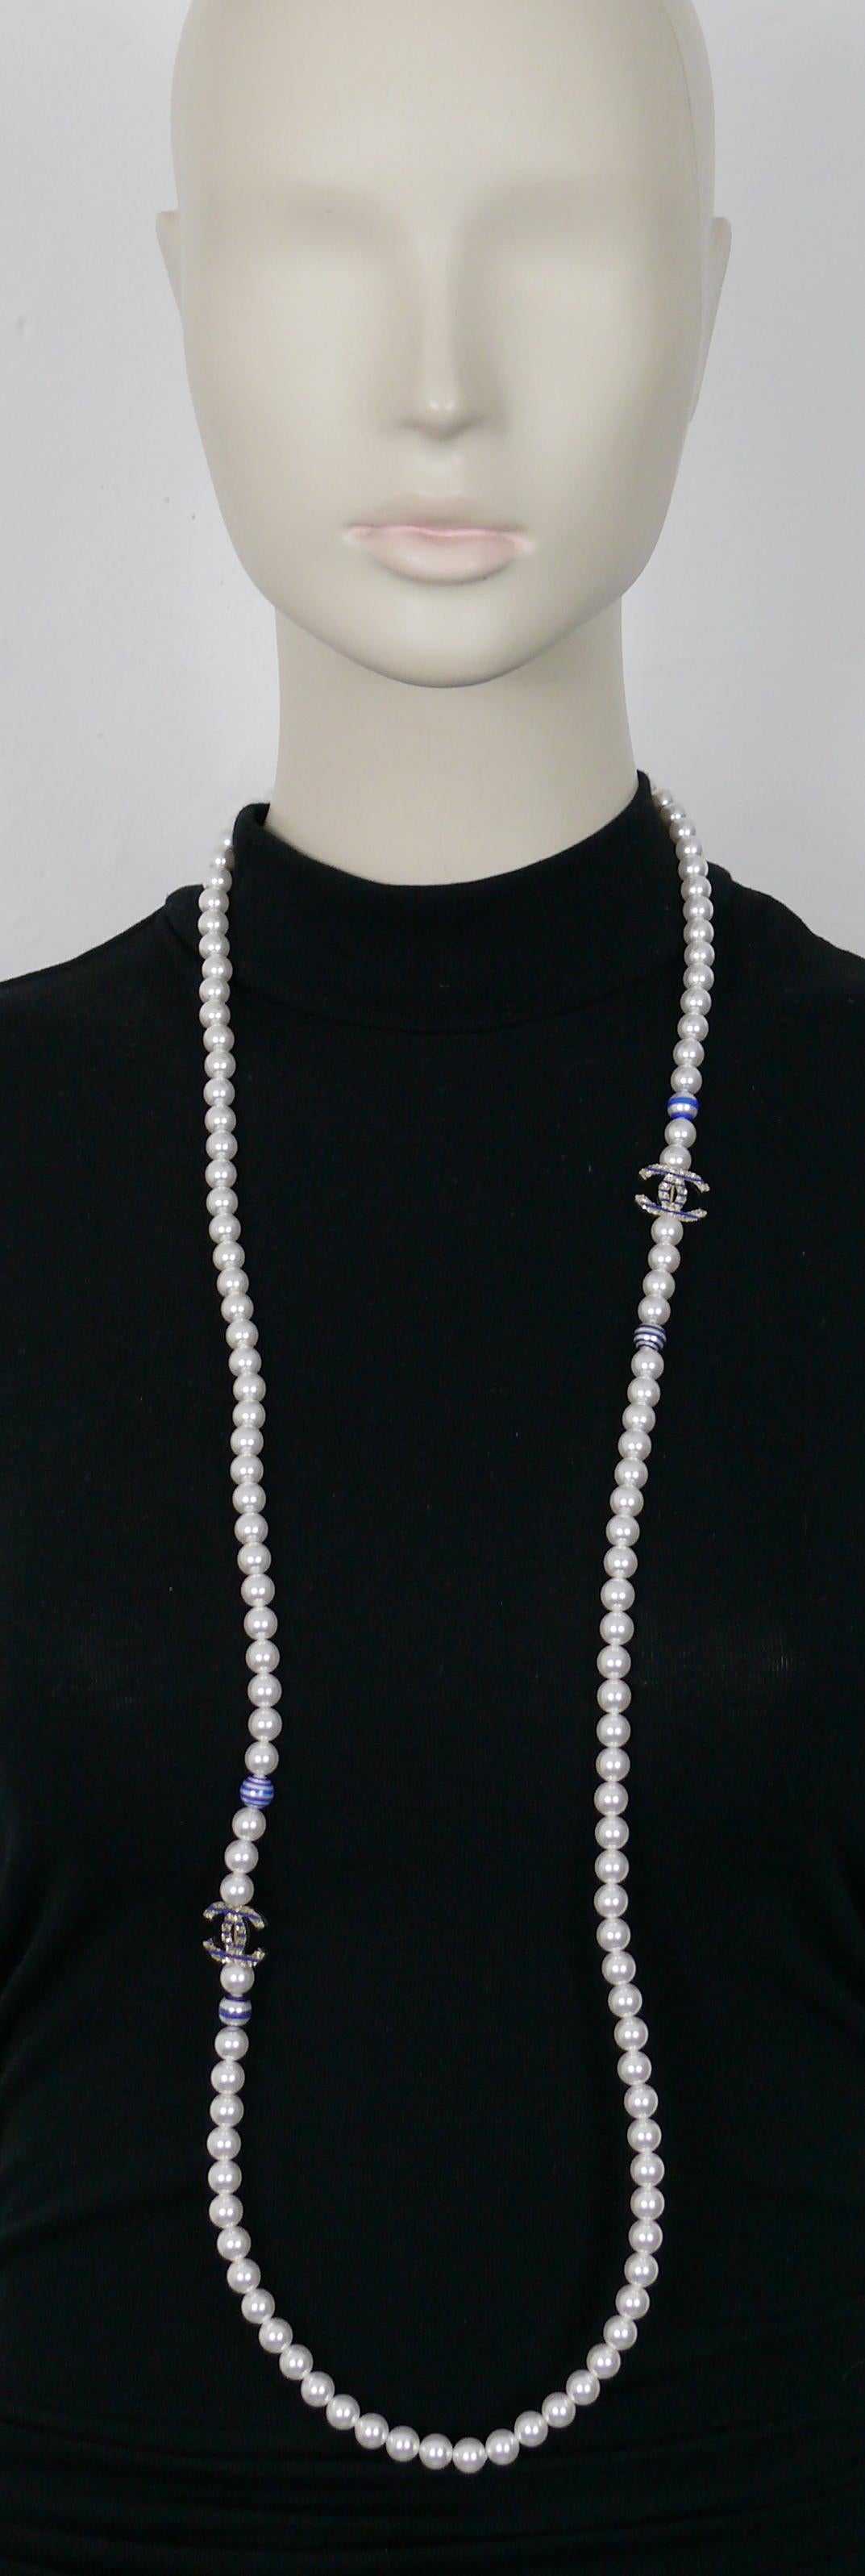 CHANEL Halskette aus weißen Kunstperlen mit vier Perlen und zwei hellen, goldfarbenen CC-Logos, die mit blauen Streifen verziert sind.

CHANEL 2019 Resort Collection (La Pausa).

Verstellbarer Karabiner-Verschluss.
Verlängerungskette.

Laserzeichen